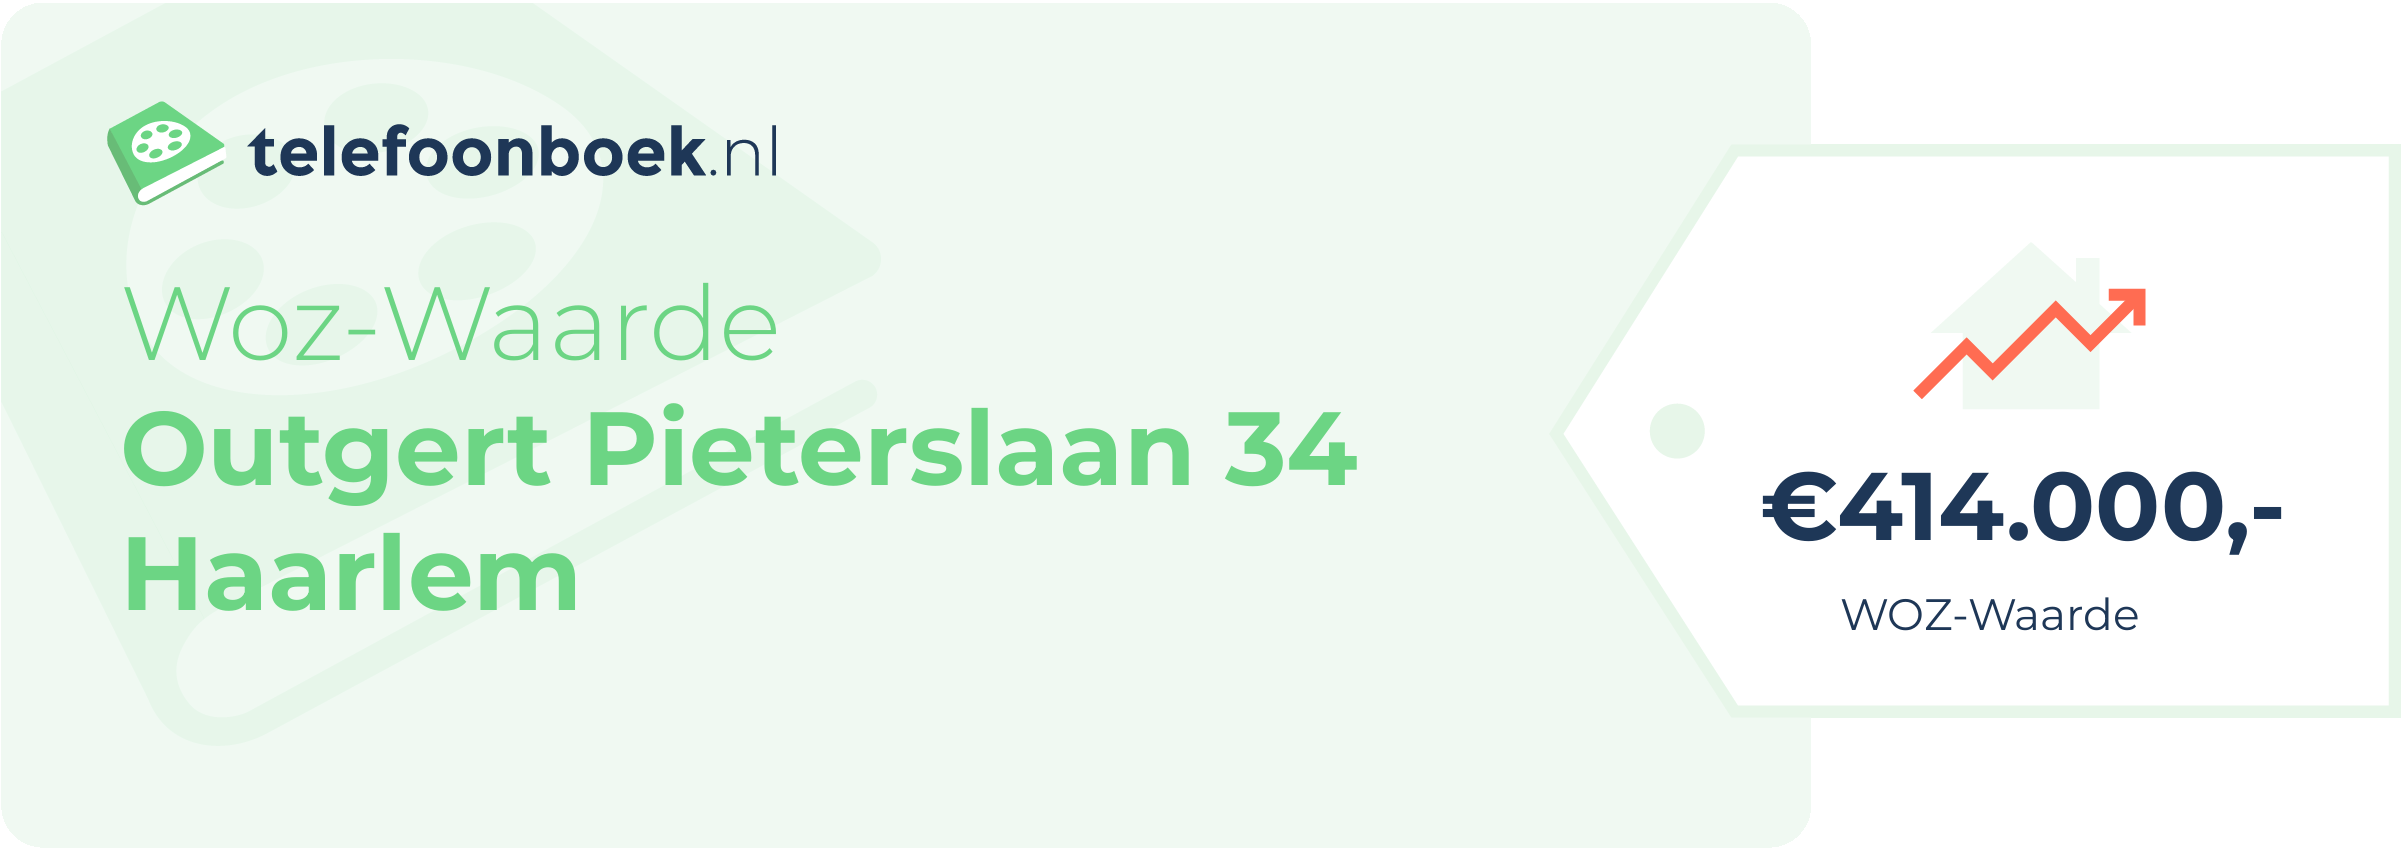 WOZ-waarde Outgert Pieterslaan 34 Haarlem